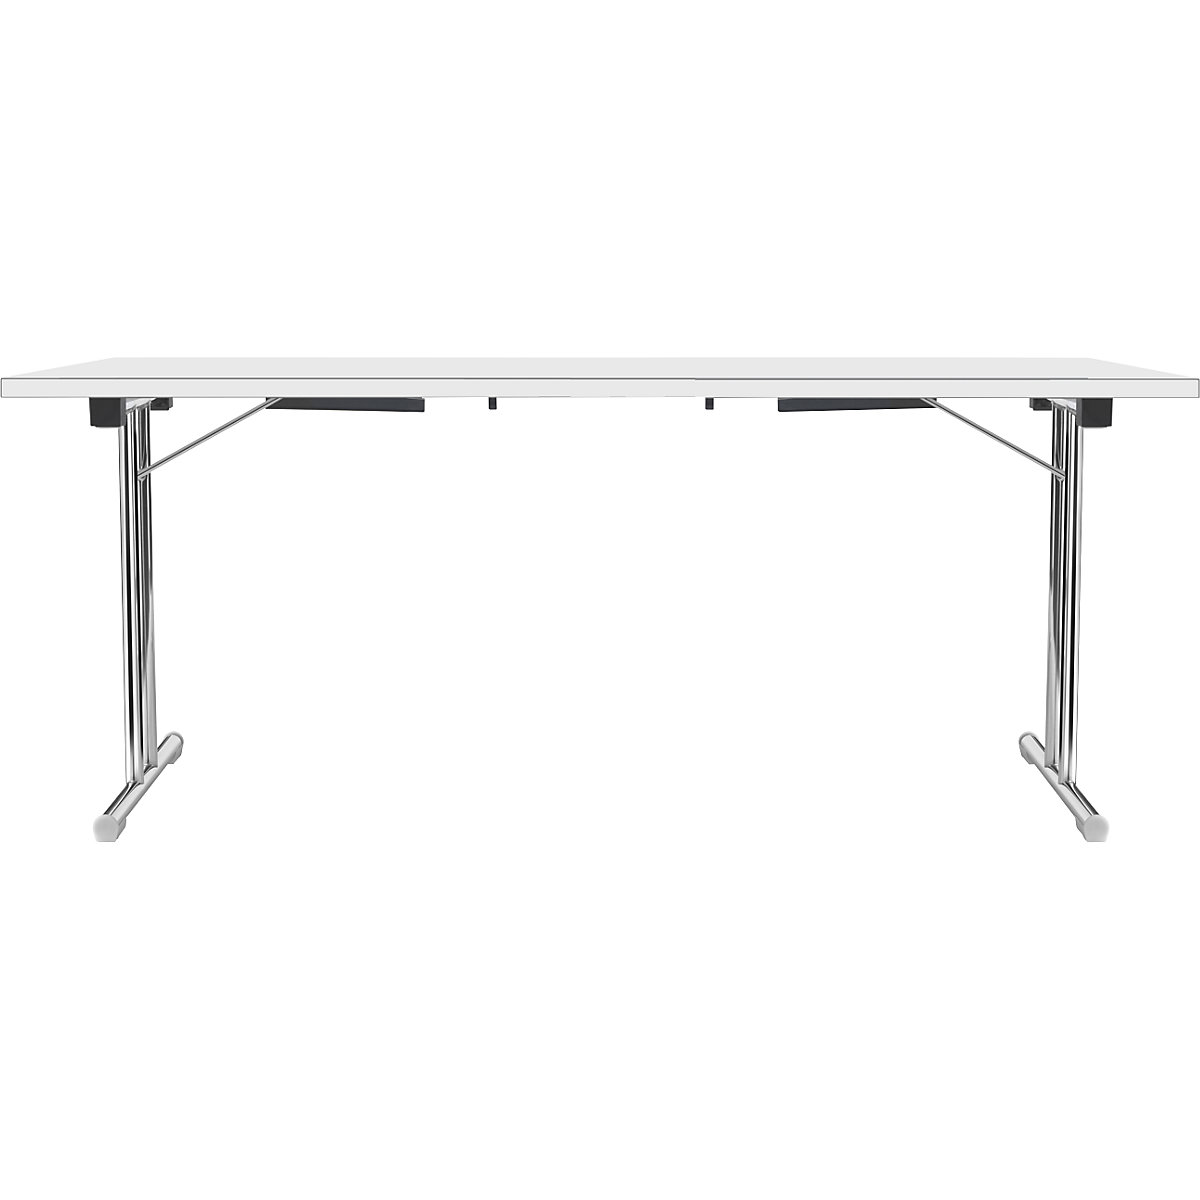 Tavolo pieghevole con basamento a T doppio, telaio in tubo tondo d'acciaio, cromato, bianco/bianco, largh. x prof. 1800 x 800 mm-4